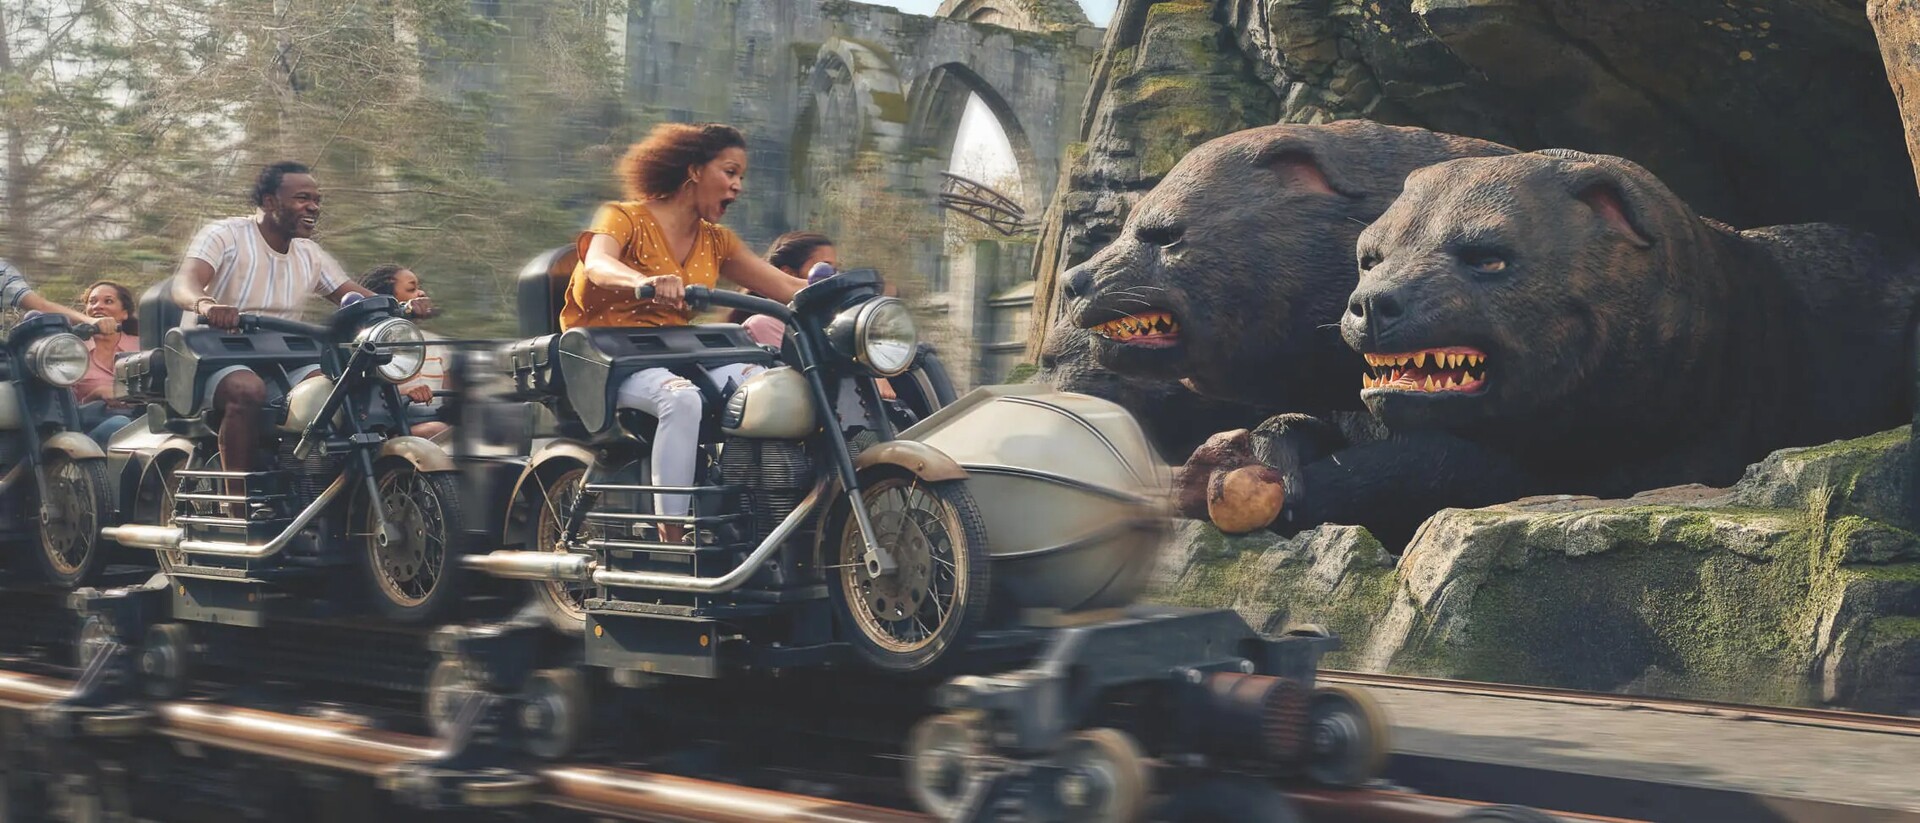 Uma das atrações do Universal Orlando é a montanha-russa Hagrid’s Magical Creatures Motorbike Adventure